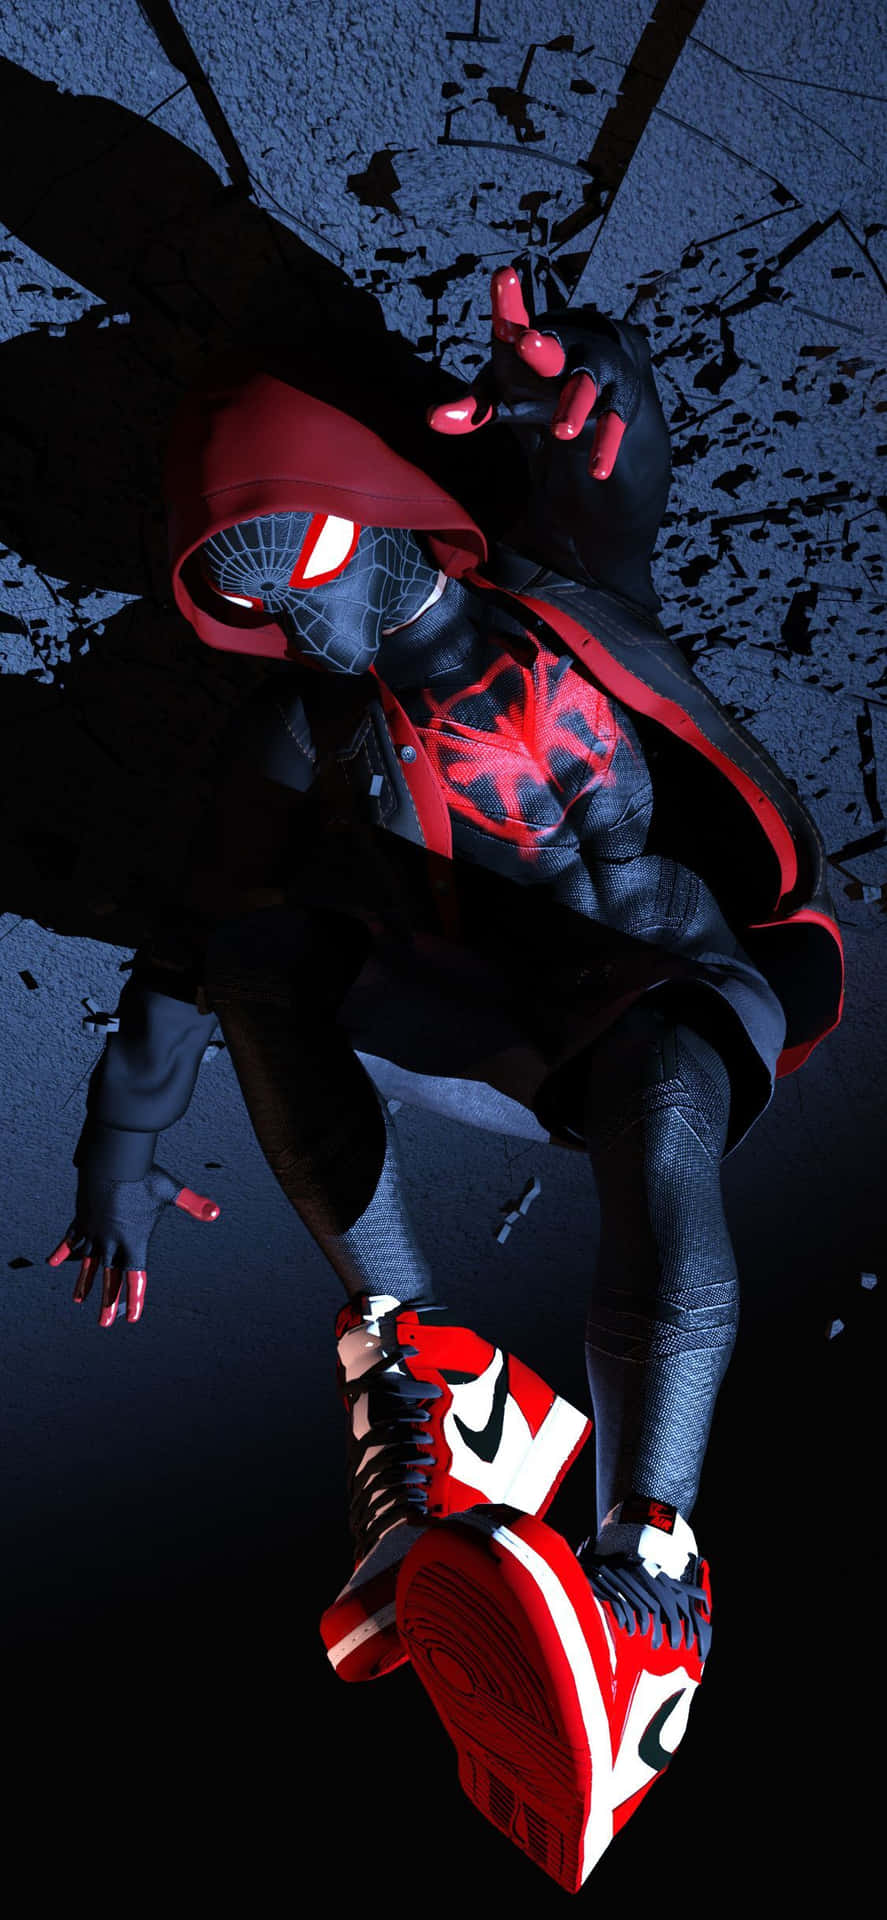 Bakgrundsbildför Iphone Med Den Svarta Marvel Superhjälten Miles Morales. Wallpaper